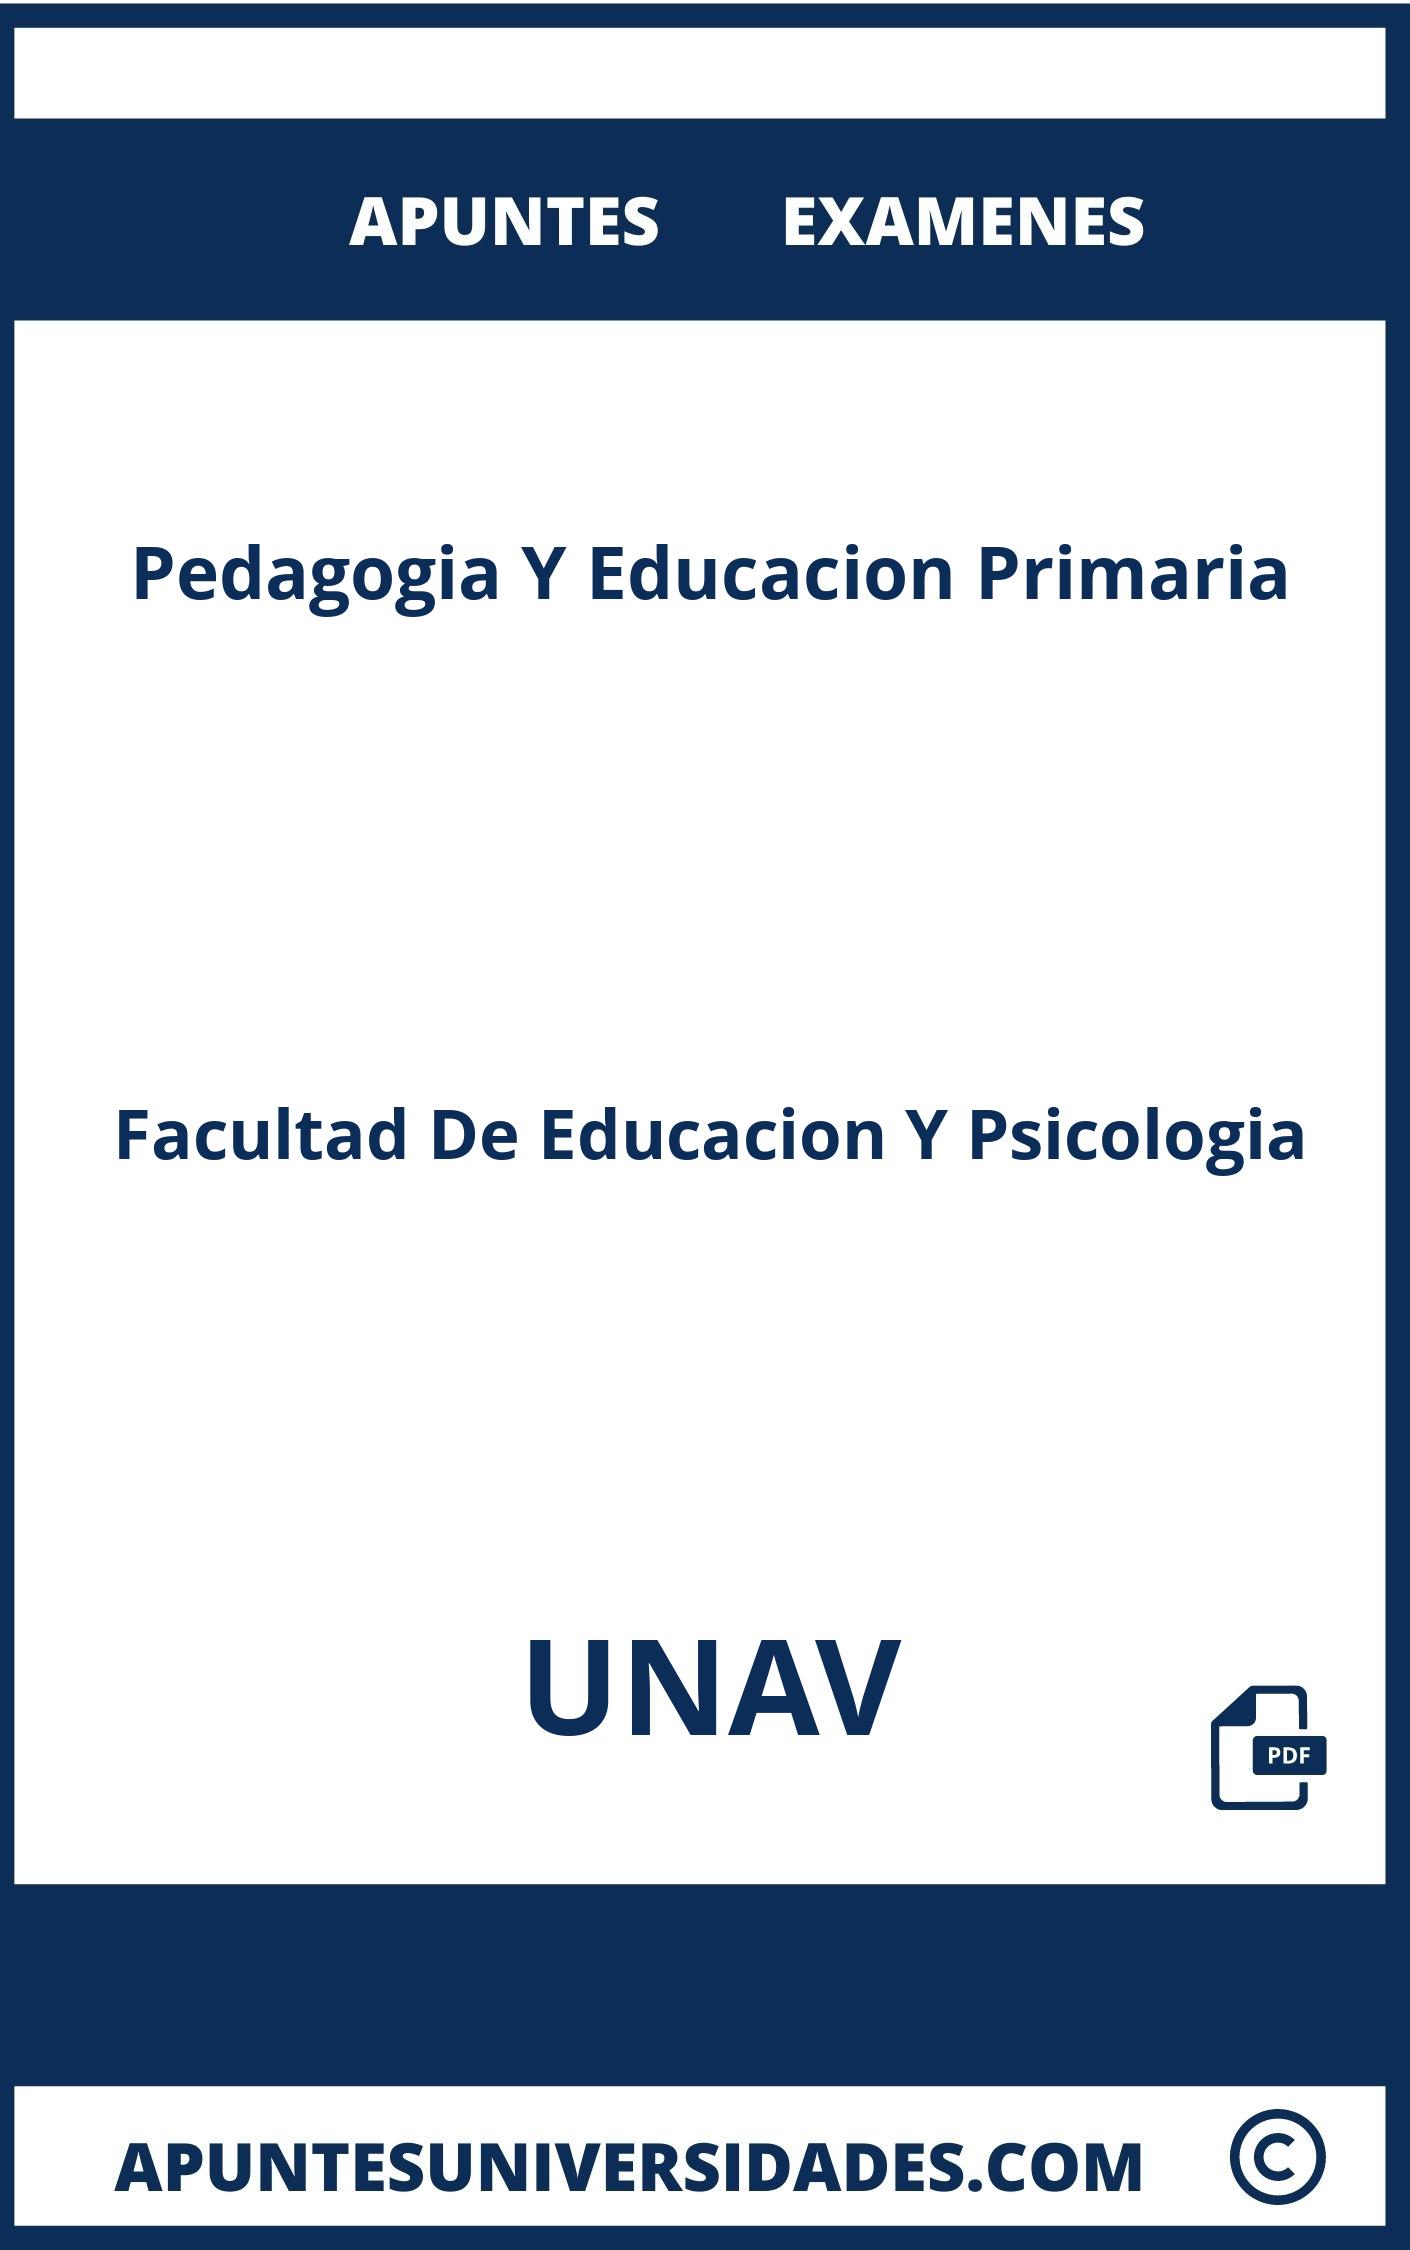 Pedagogia Y Educacion Primaria UNAV Examenes Apuntes